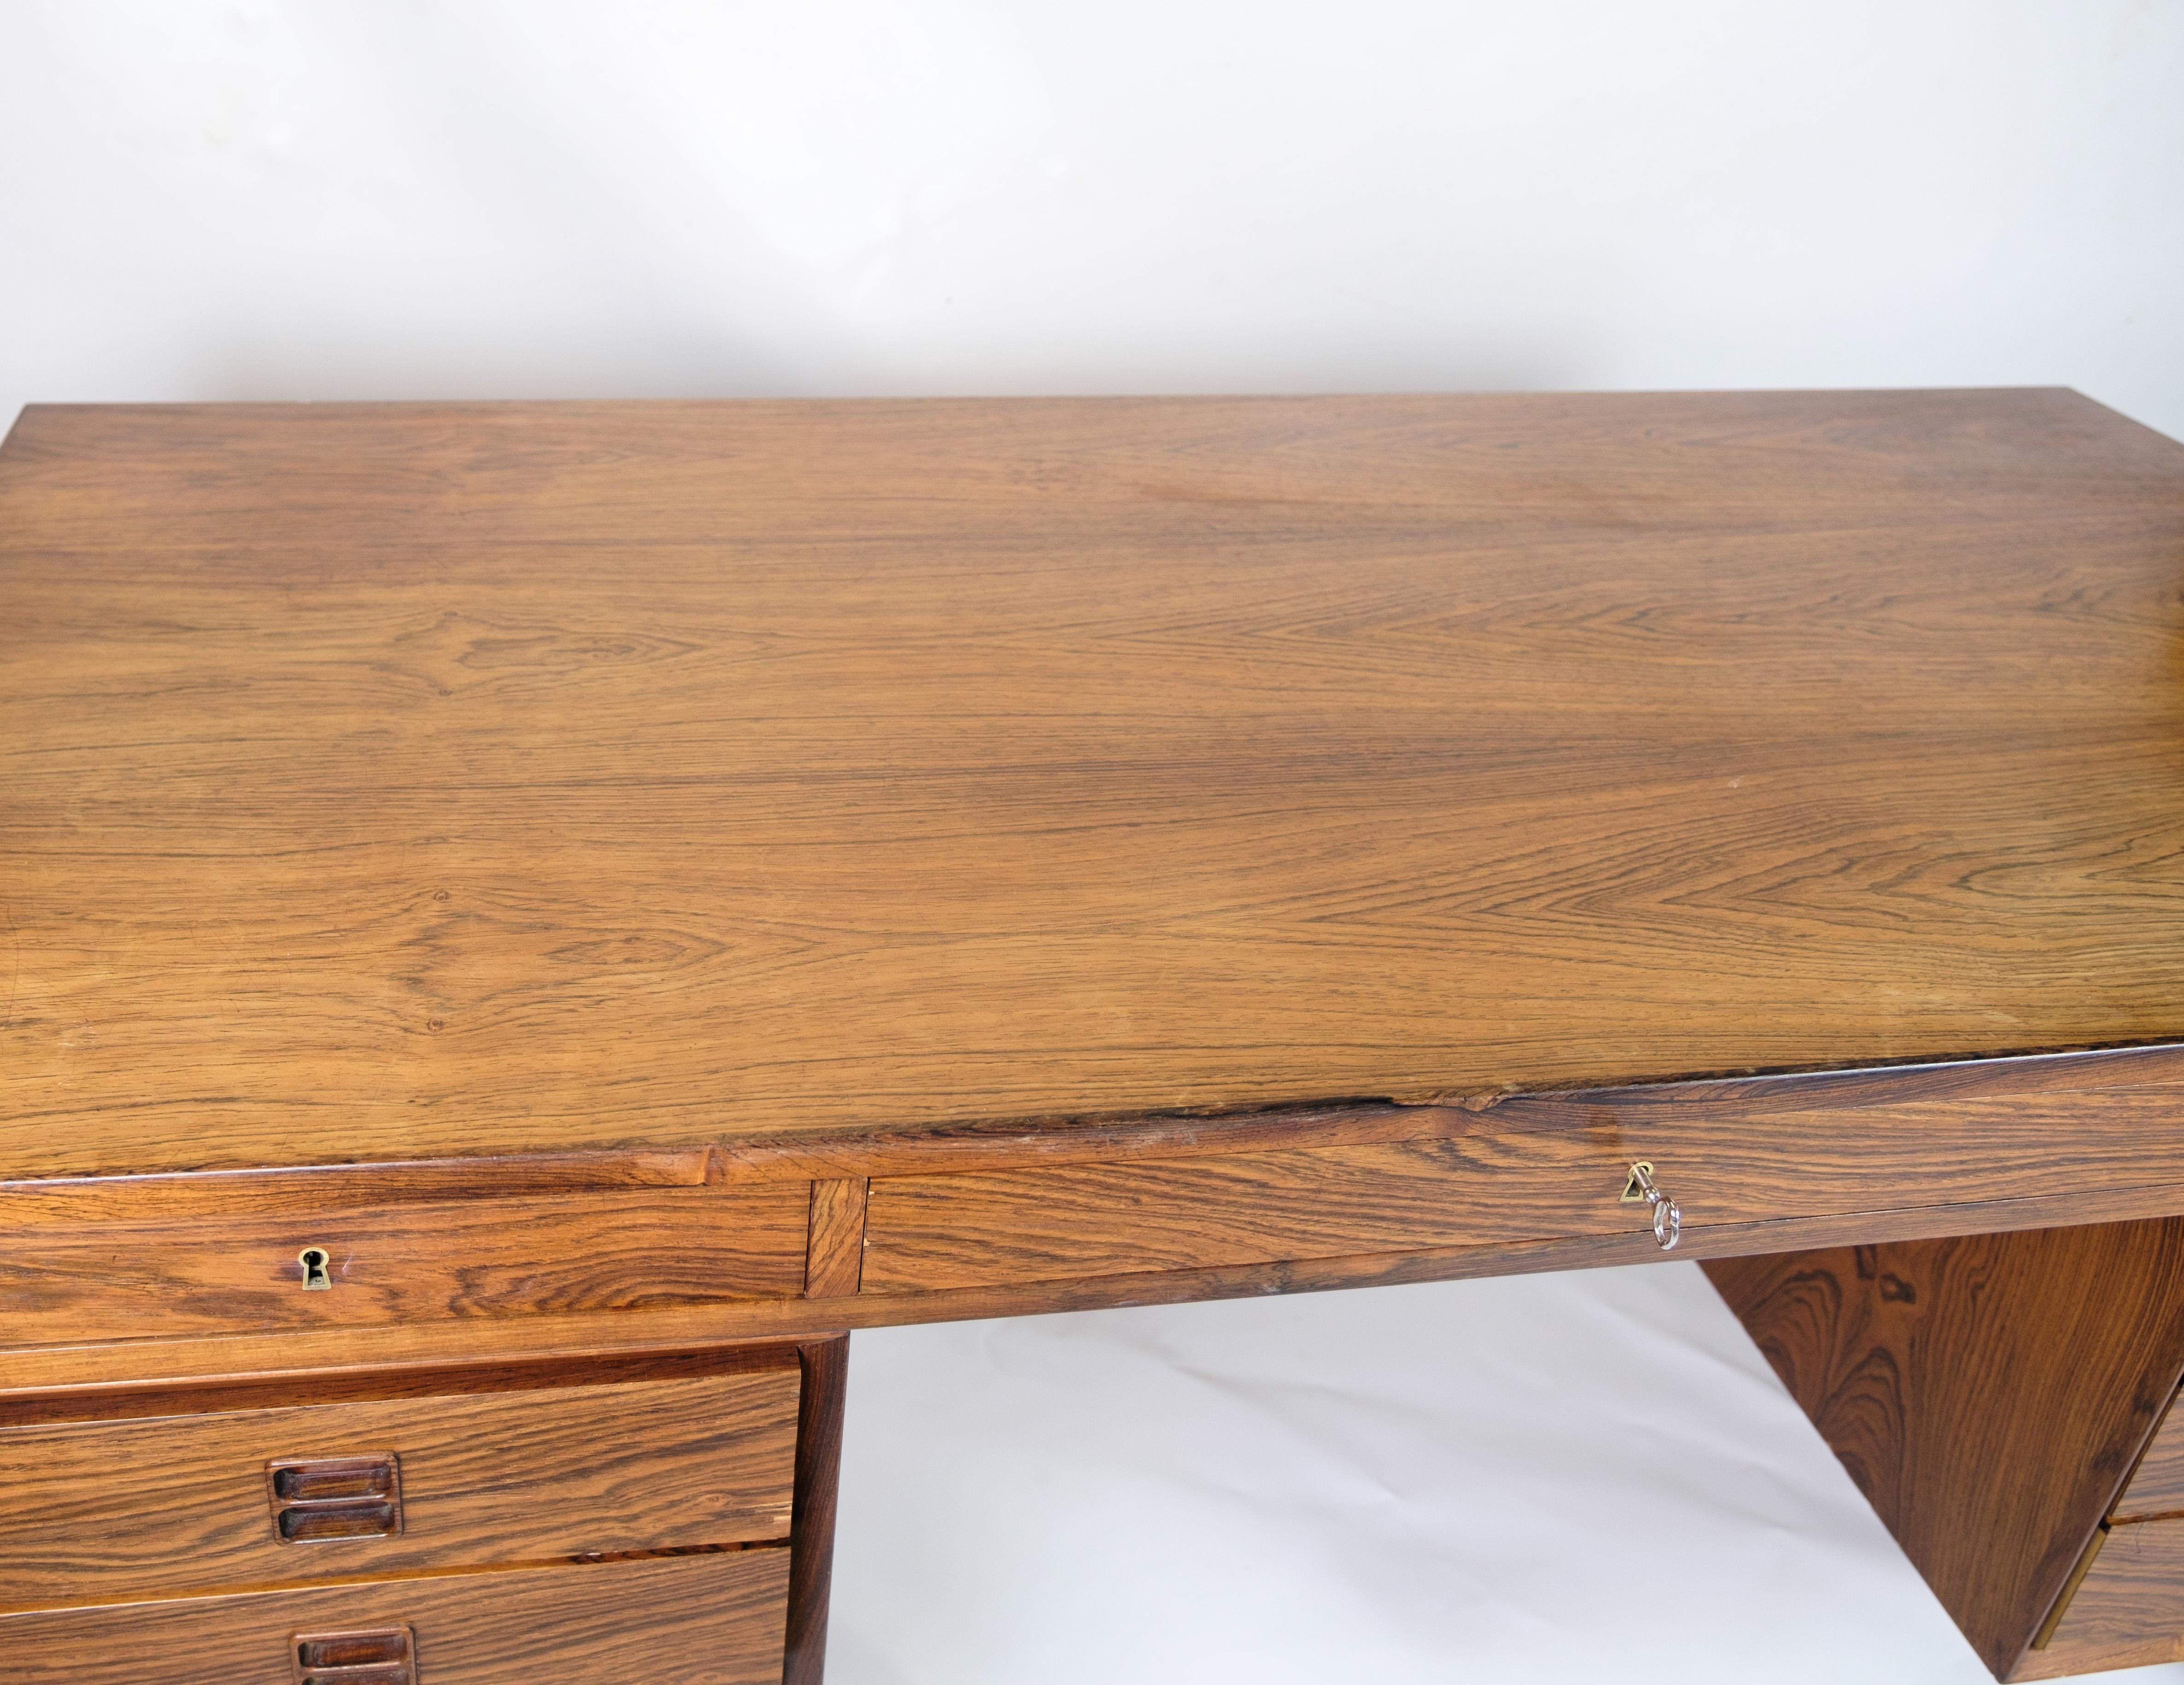 Schreibtisch aus Palisanderholz mit hochwertigem dänischen Design aus den 1960er Jahren.
Abmessungen in cm: H:72 B:150 T:75